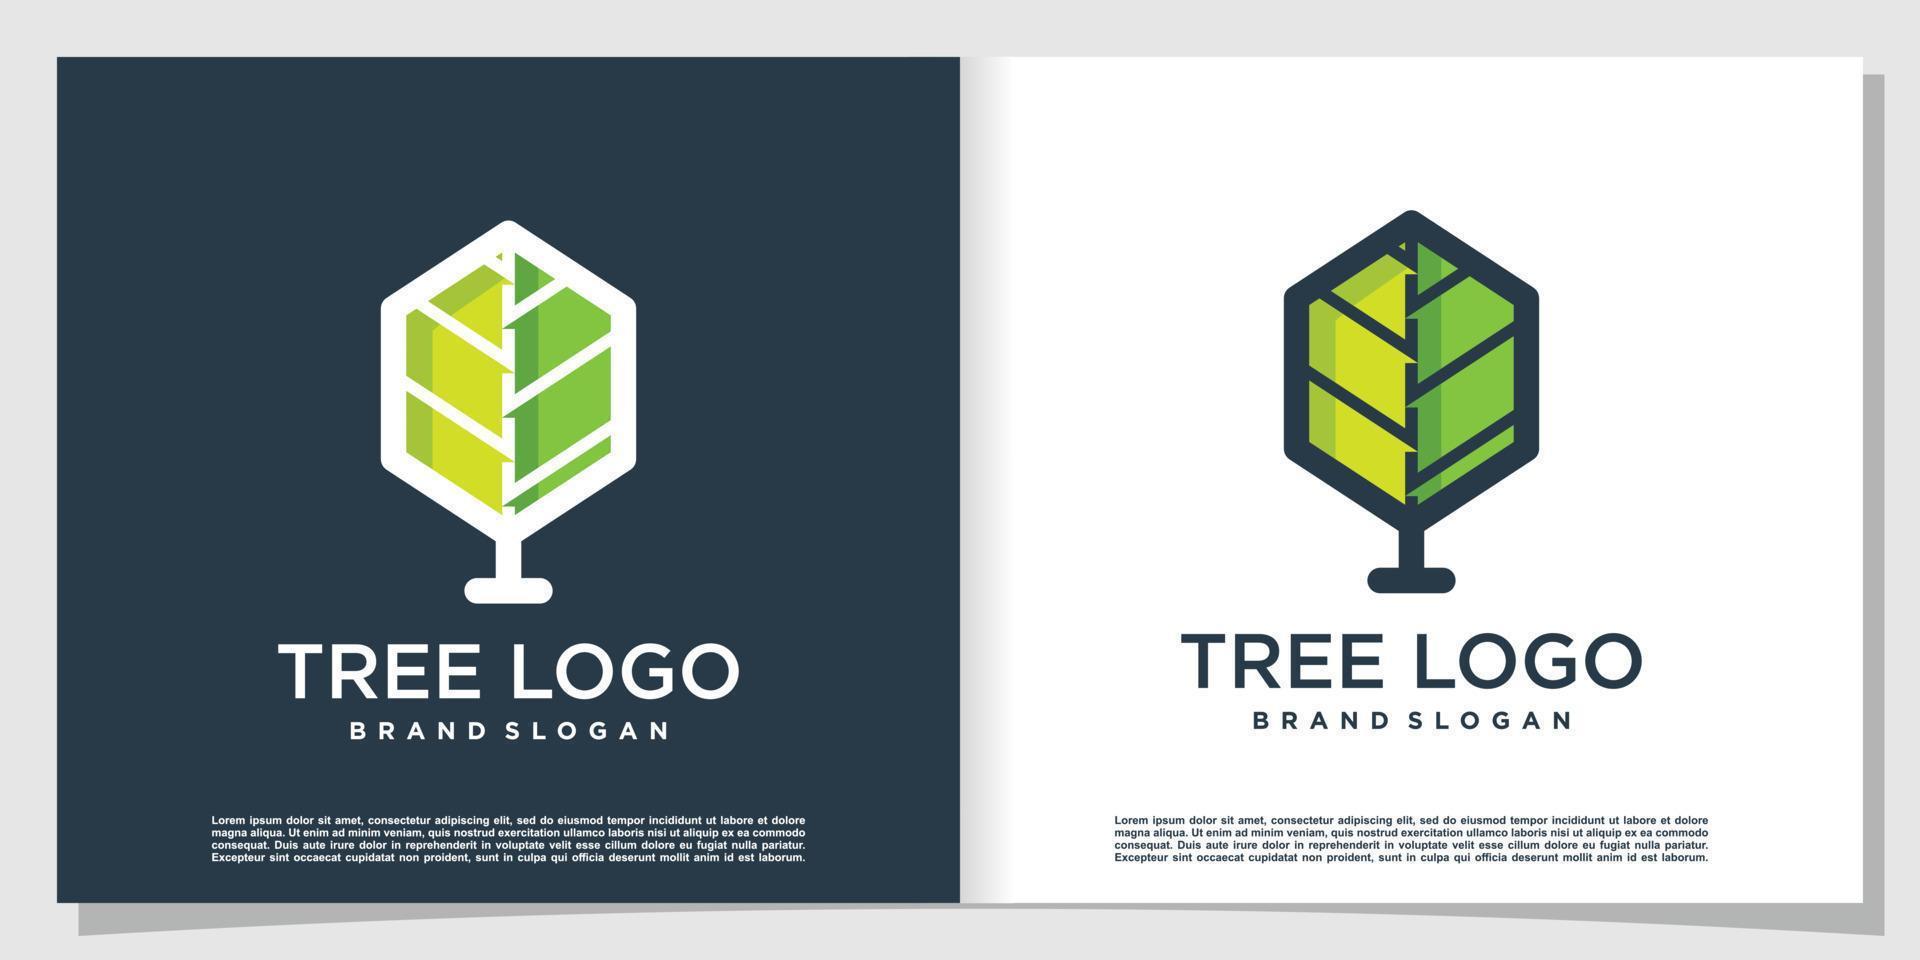 logo arbre avec vecteur premium de style simple et créatif moderne